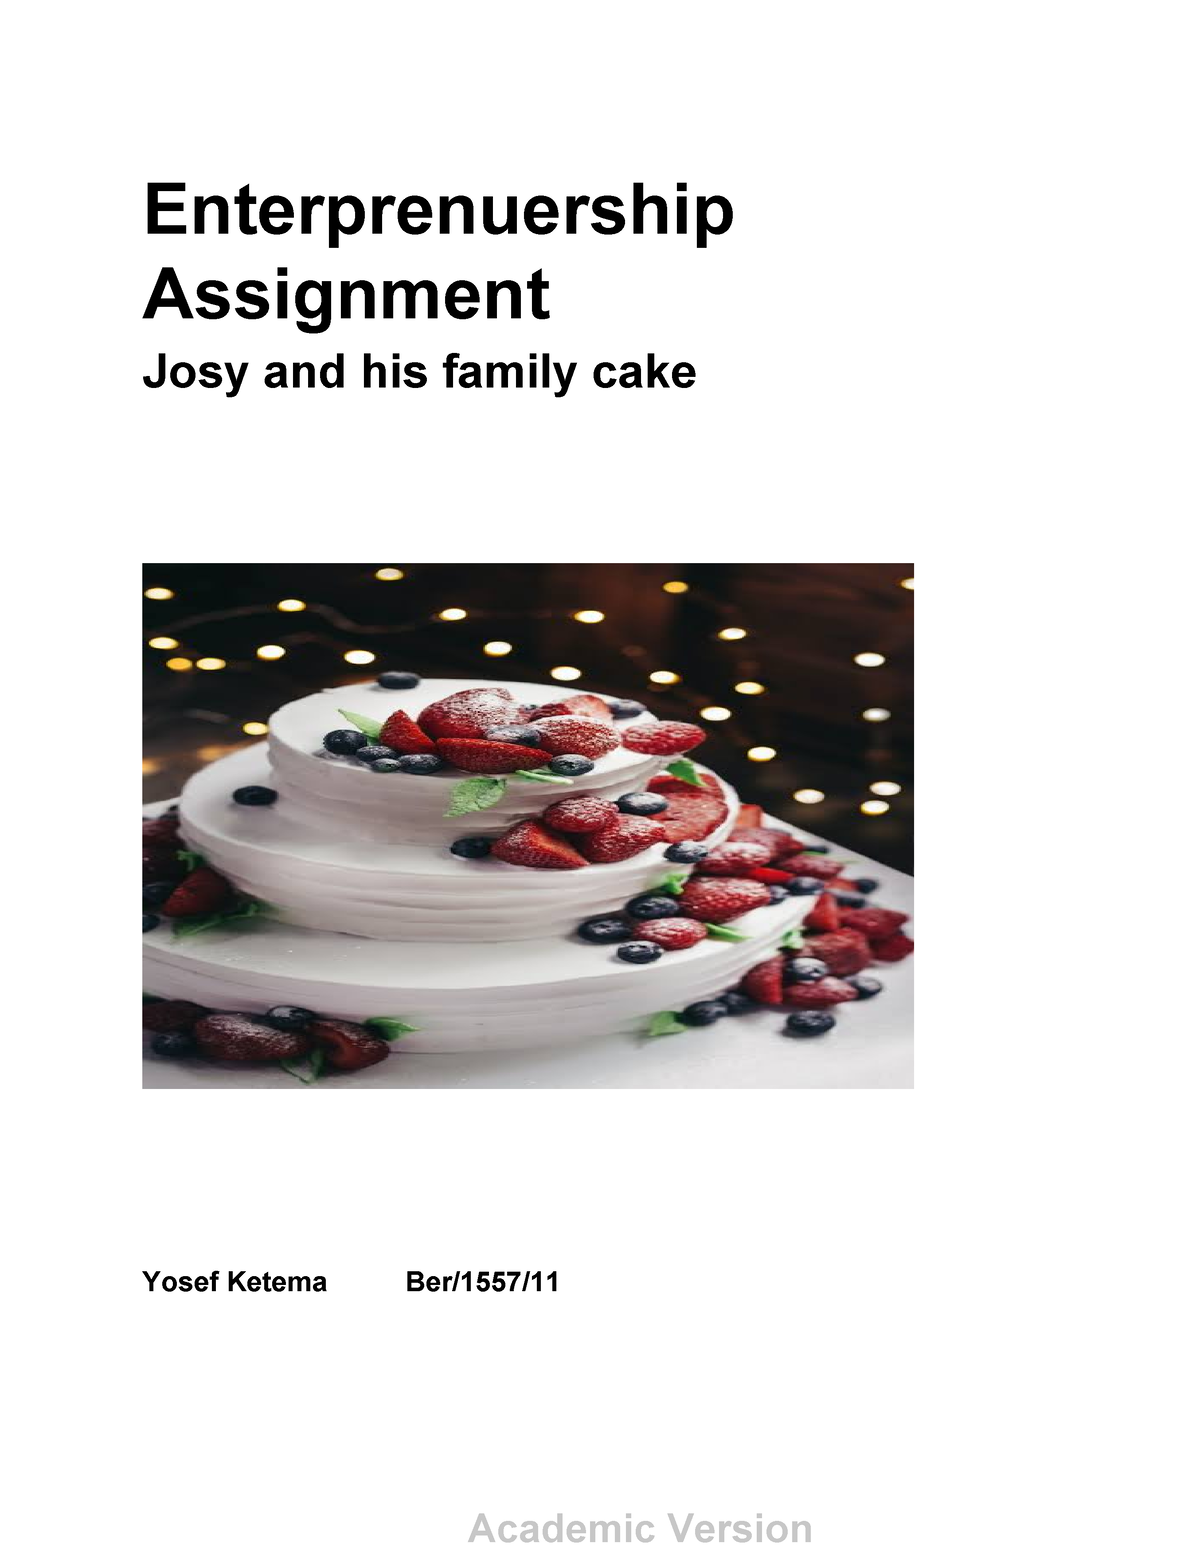 yosef cake business plan